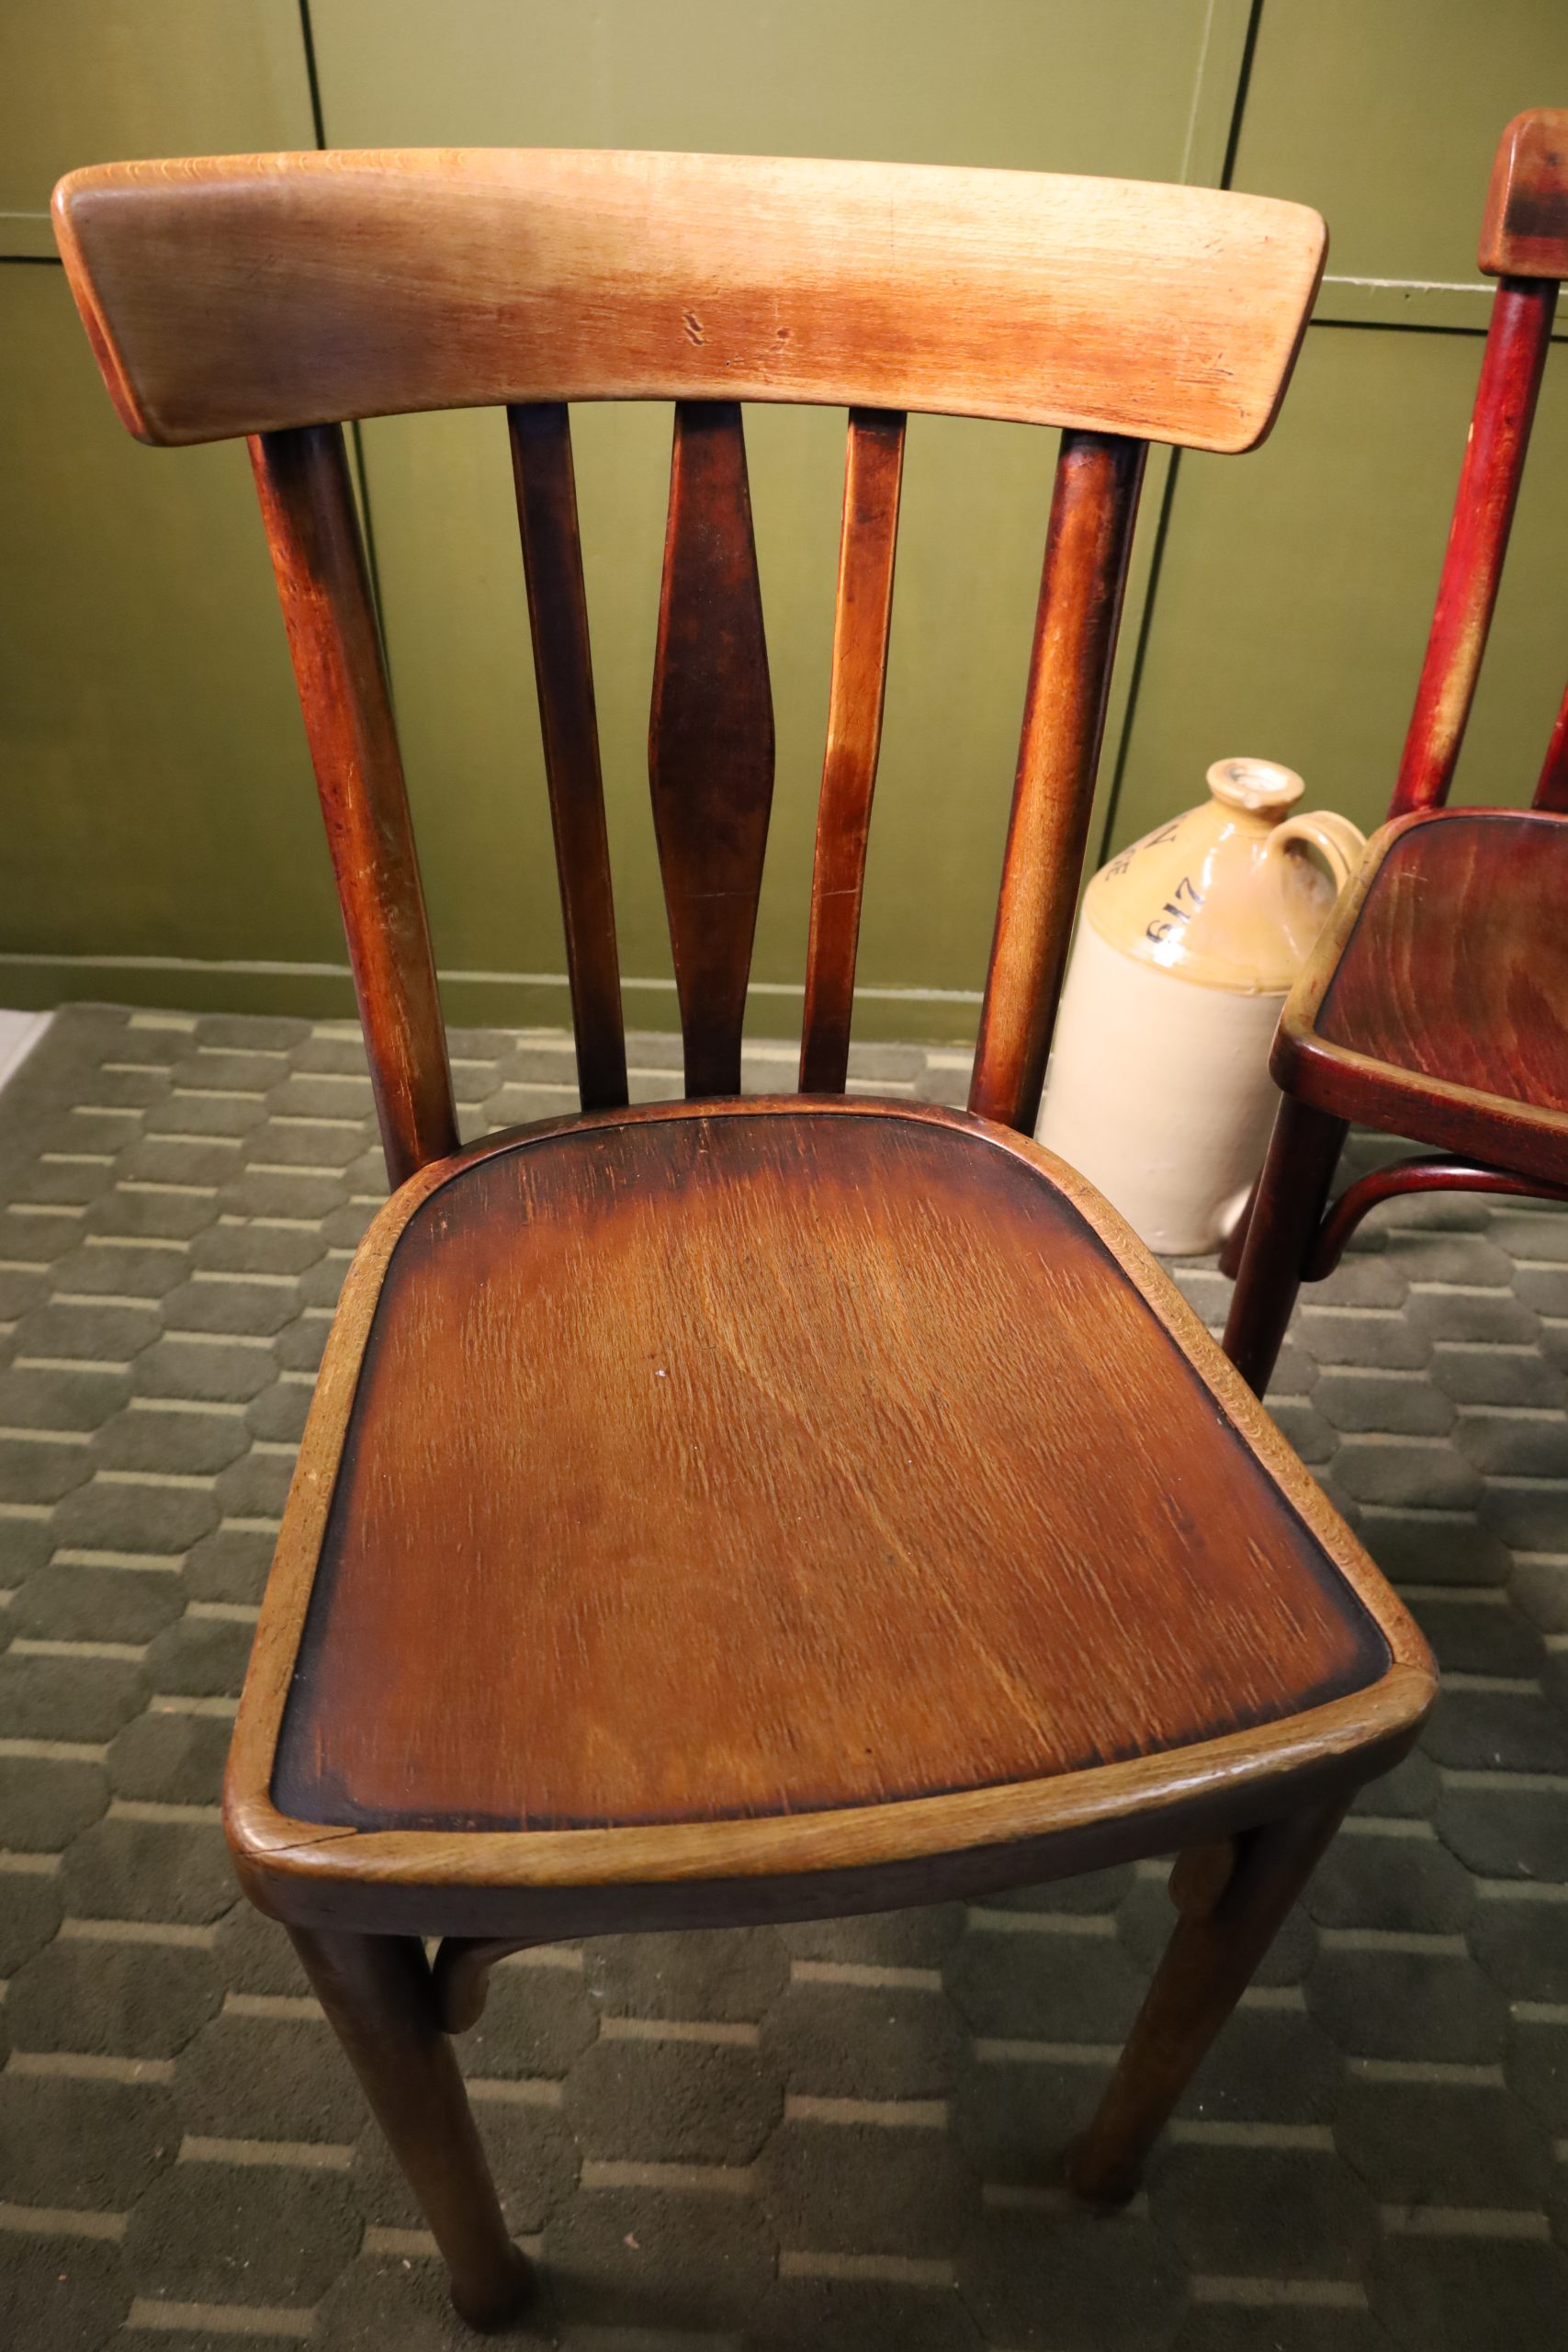 Chaises de salle à manger - Art Nouveau - Thonet - 1/2 pièces